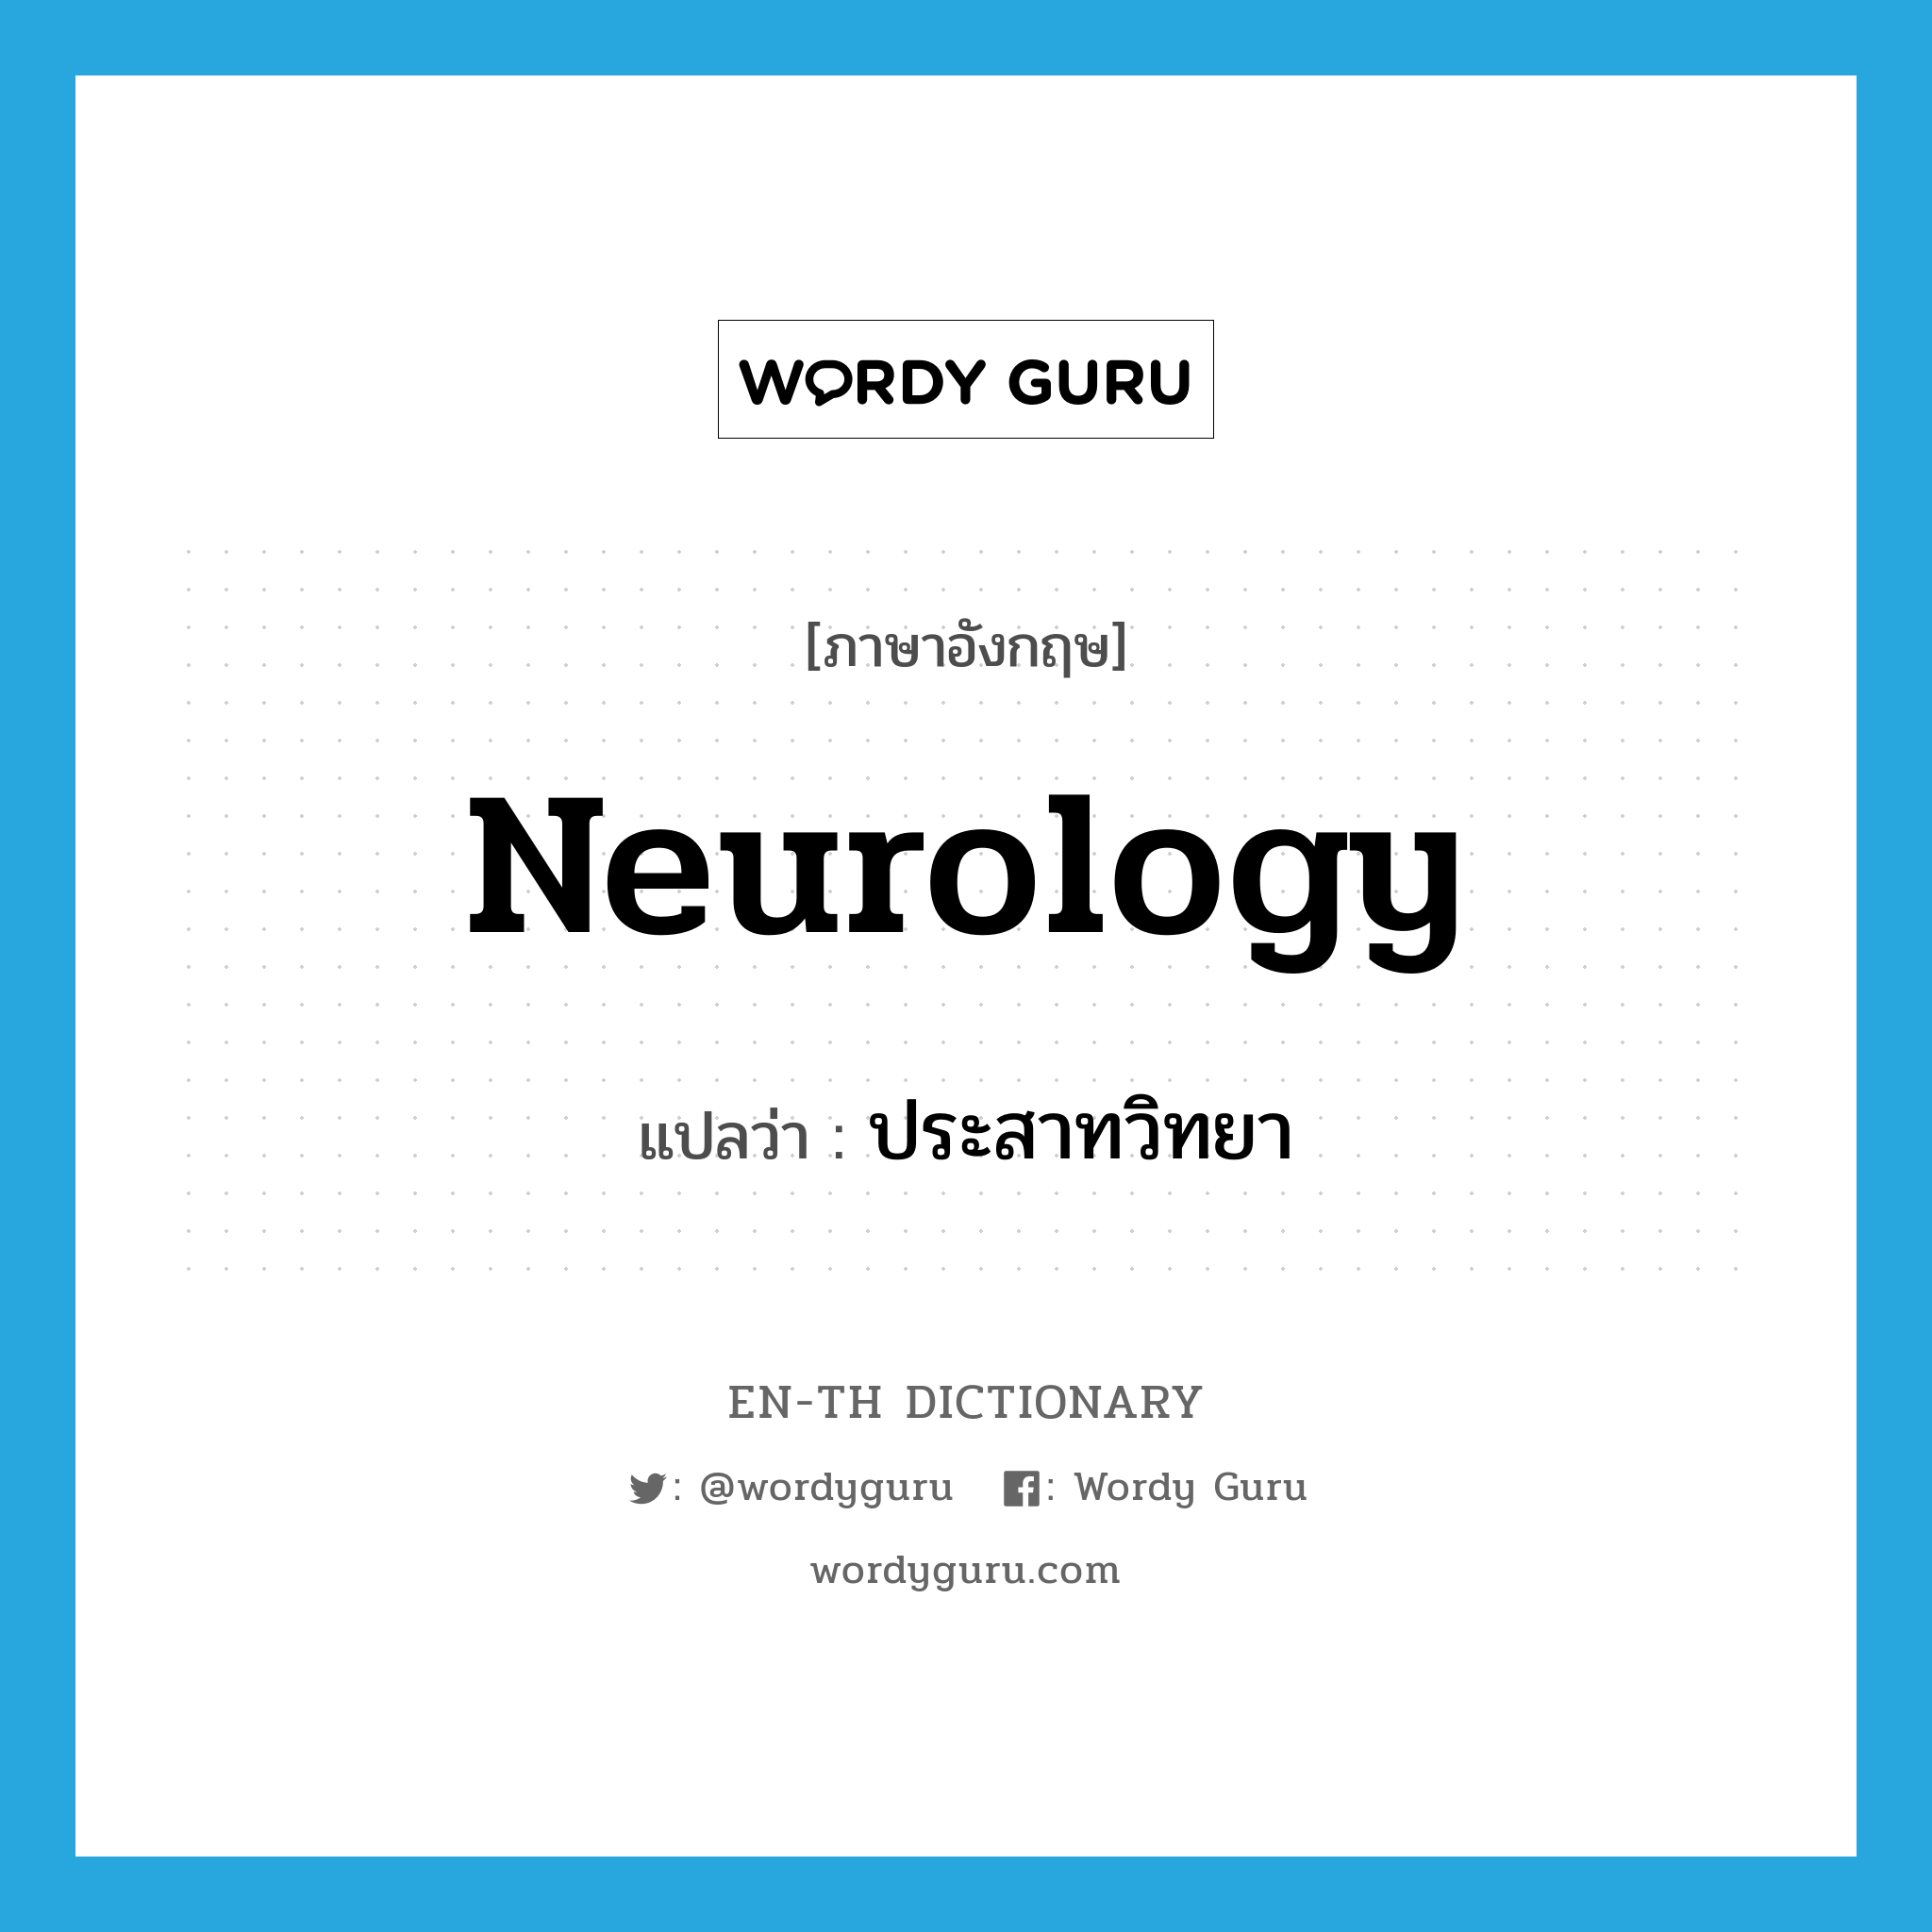 neurology แปลว่า?, คำศัพท์ภาษาอังกฤษ neurology แปลว่า ประสาทวิทยา ประเภท N หมวด N